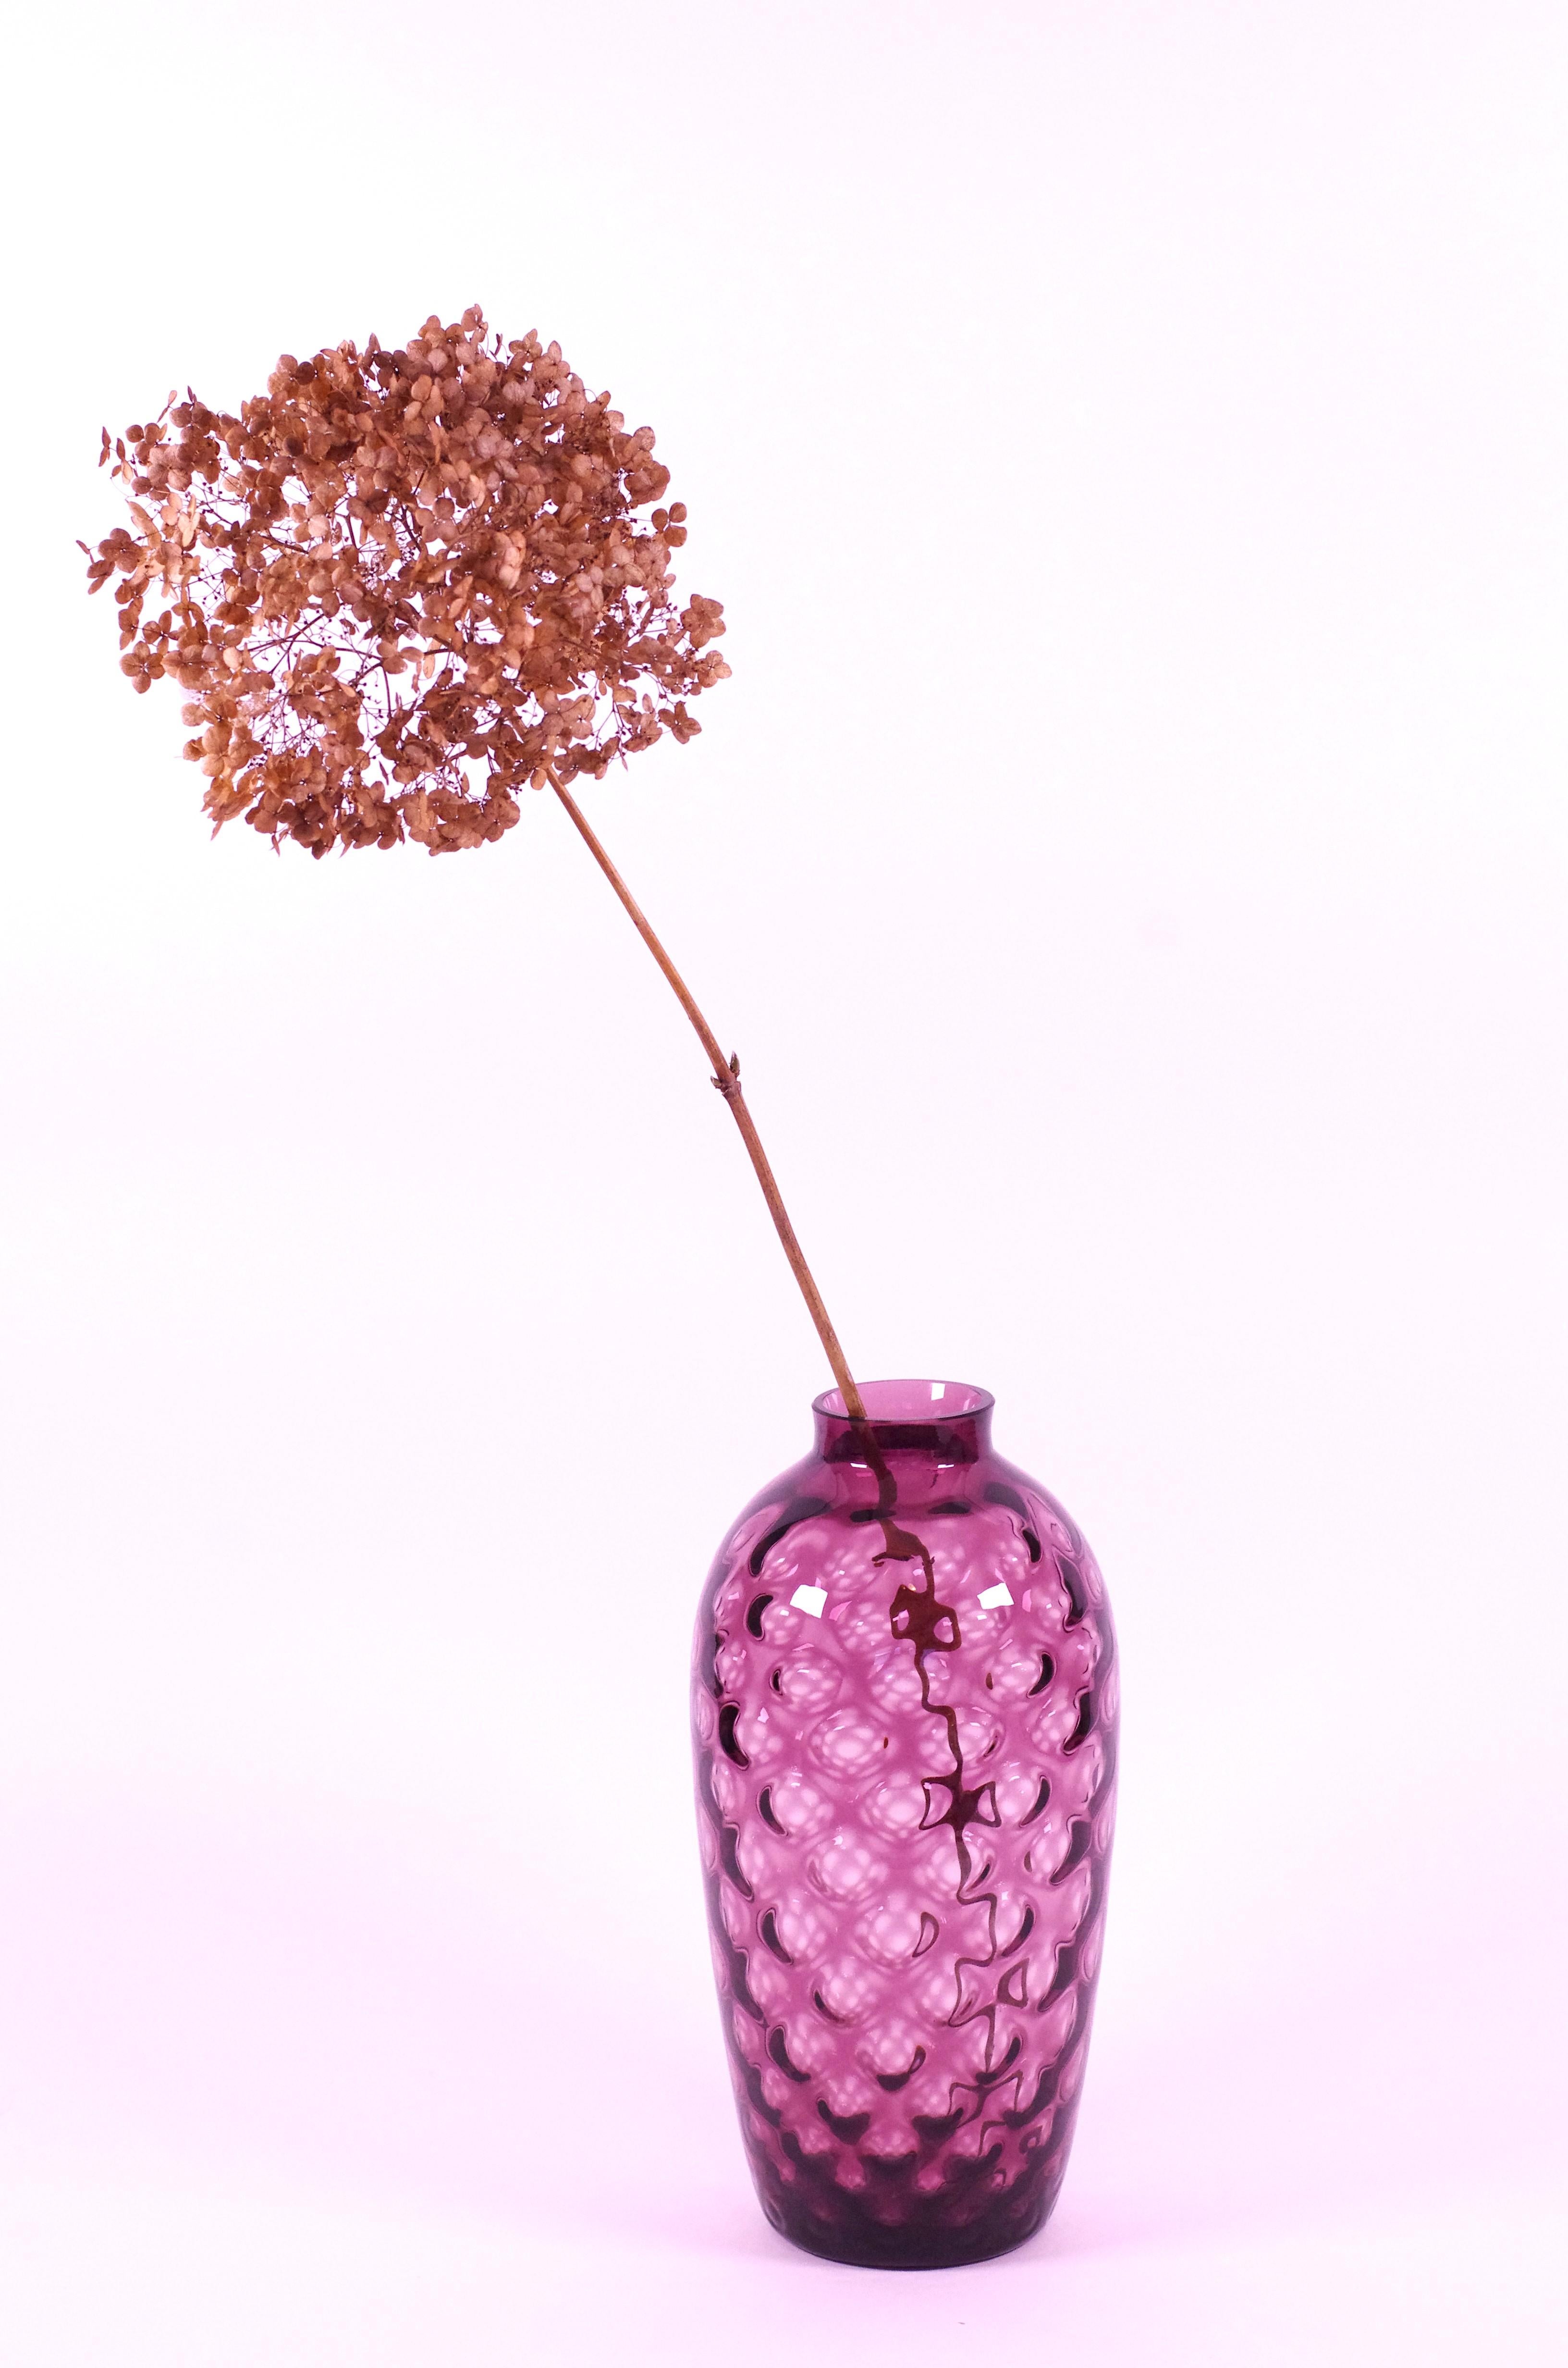 Description du produit :
Ce vase, de Borske SkLO, allie une belle couleur estivale à une forme élégante. Le vase convient à une seule fleur (plus grande) mais peut également contenir un bouquet coloré. La couleur du vase se situe entre le rose et le